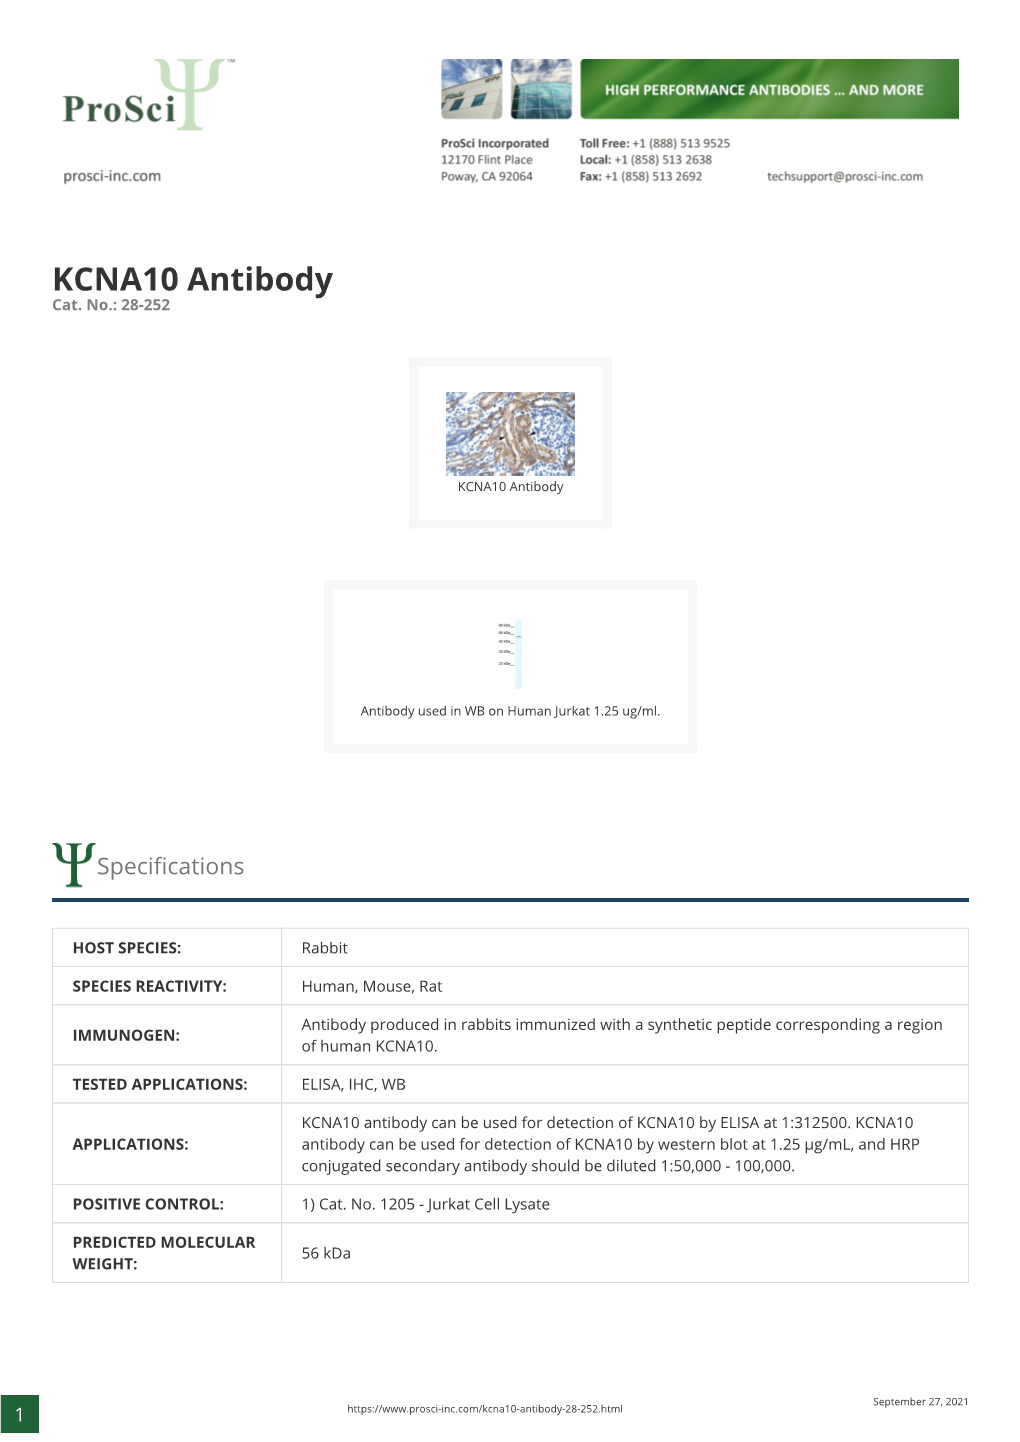 KCNA10 Antibody Cat